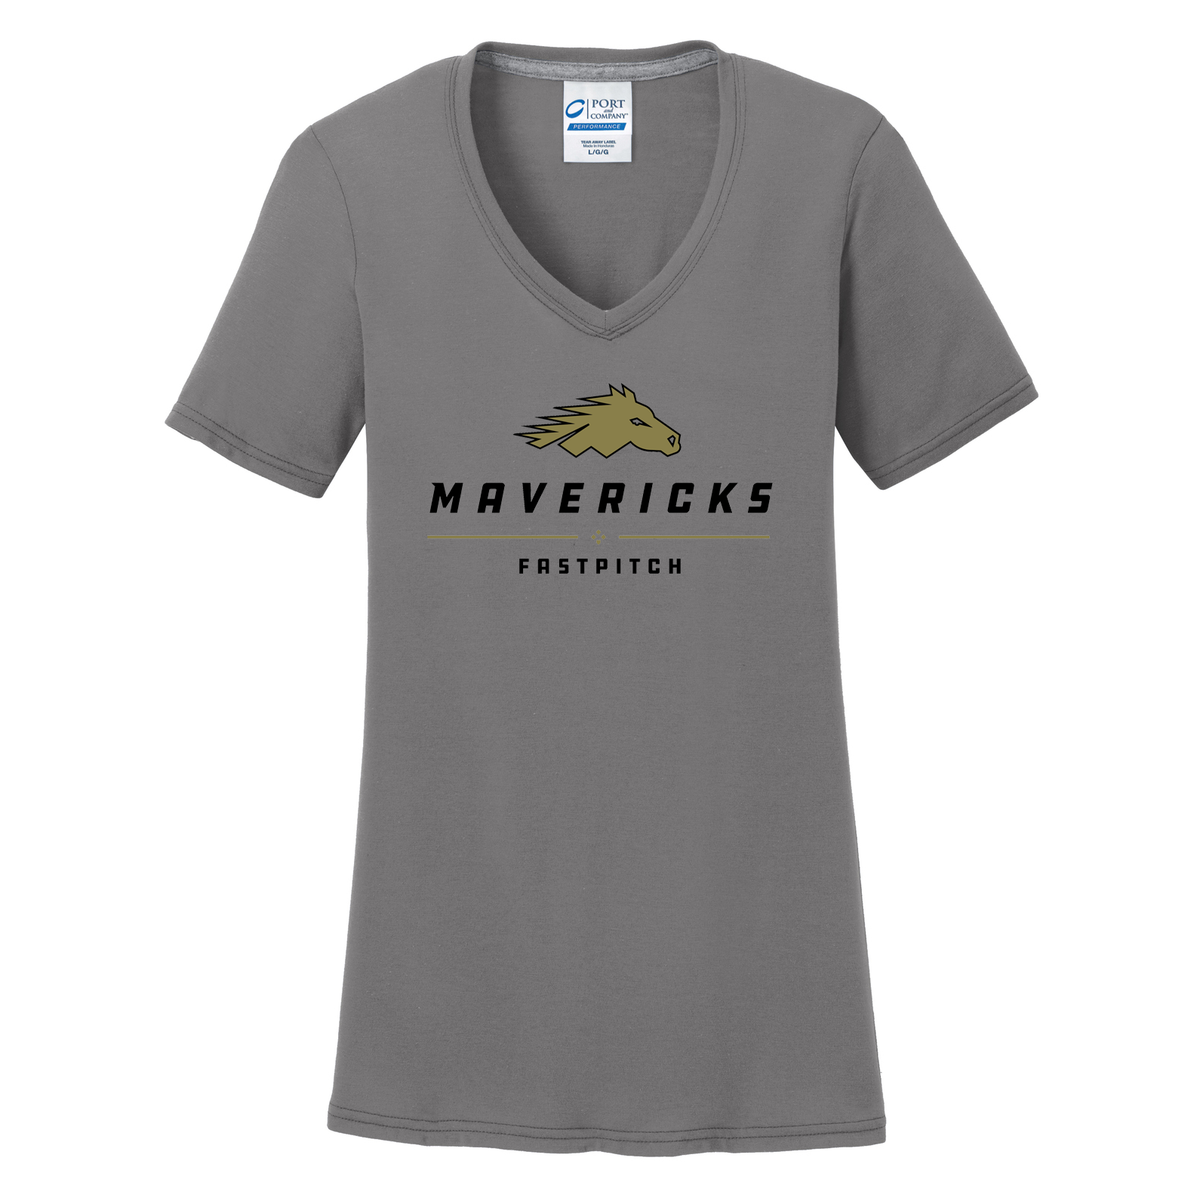 Mavs Fastpitch Women's T-Shirt